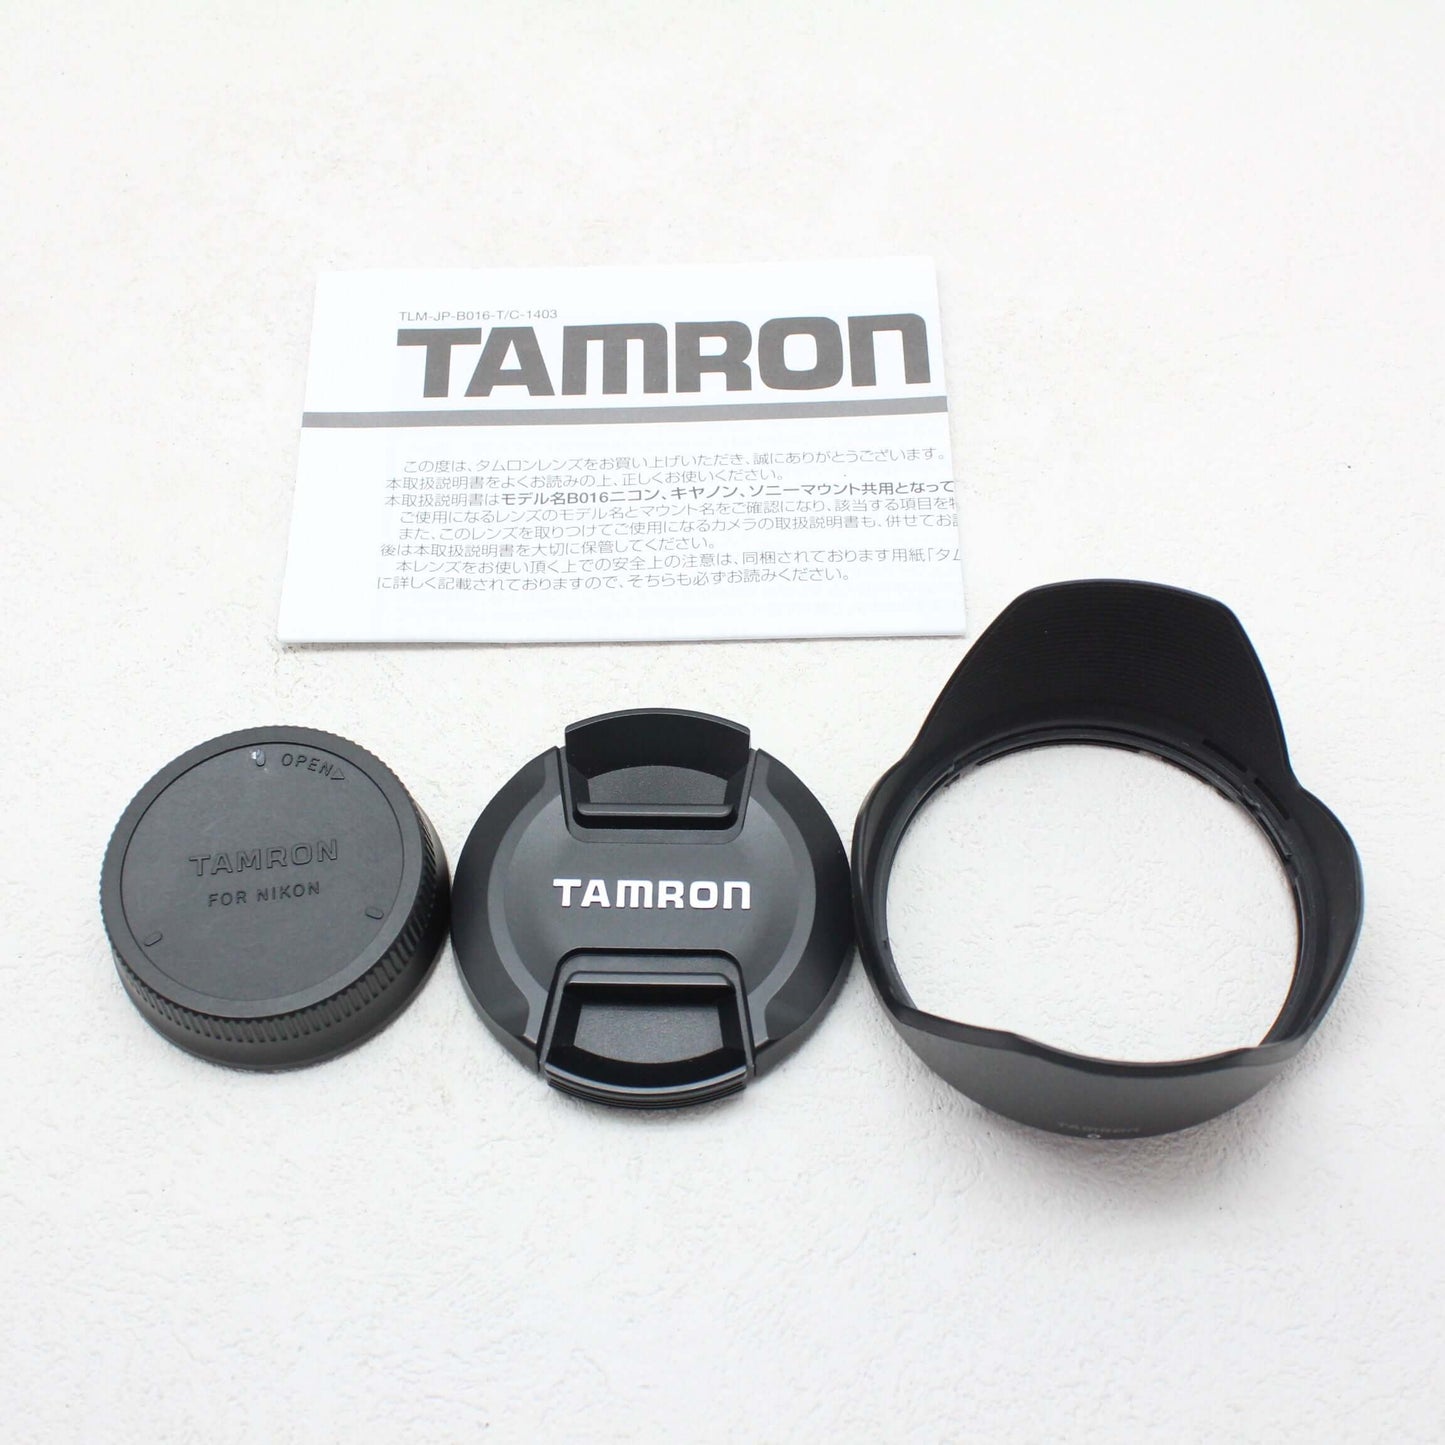 中古品TAMRON 16-300mm F3.5-6.3 iⅡ PZD(B016)(ニコン用) 【2月29日(木) youtube生配信でご紹介】